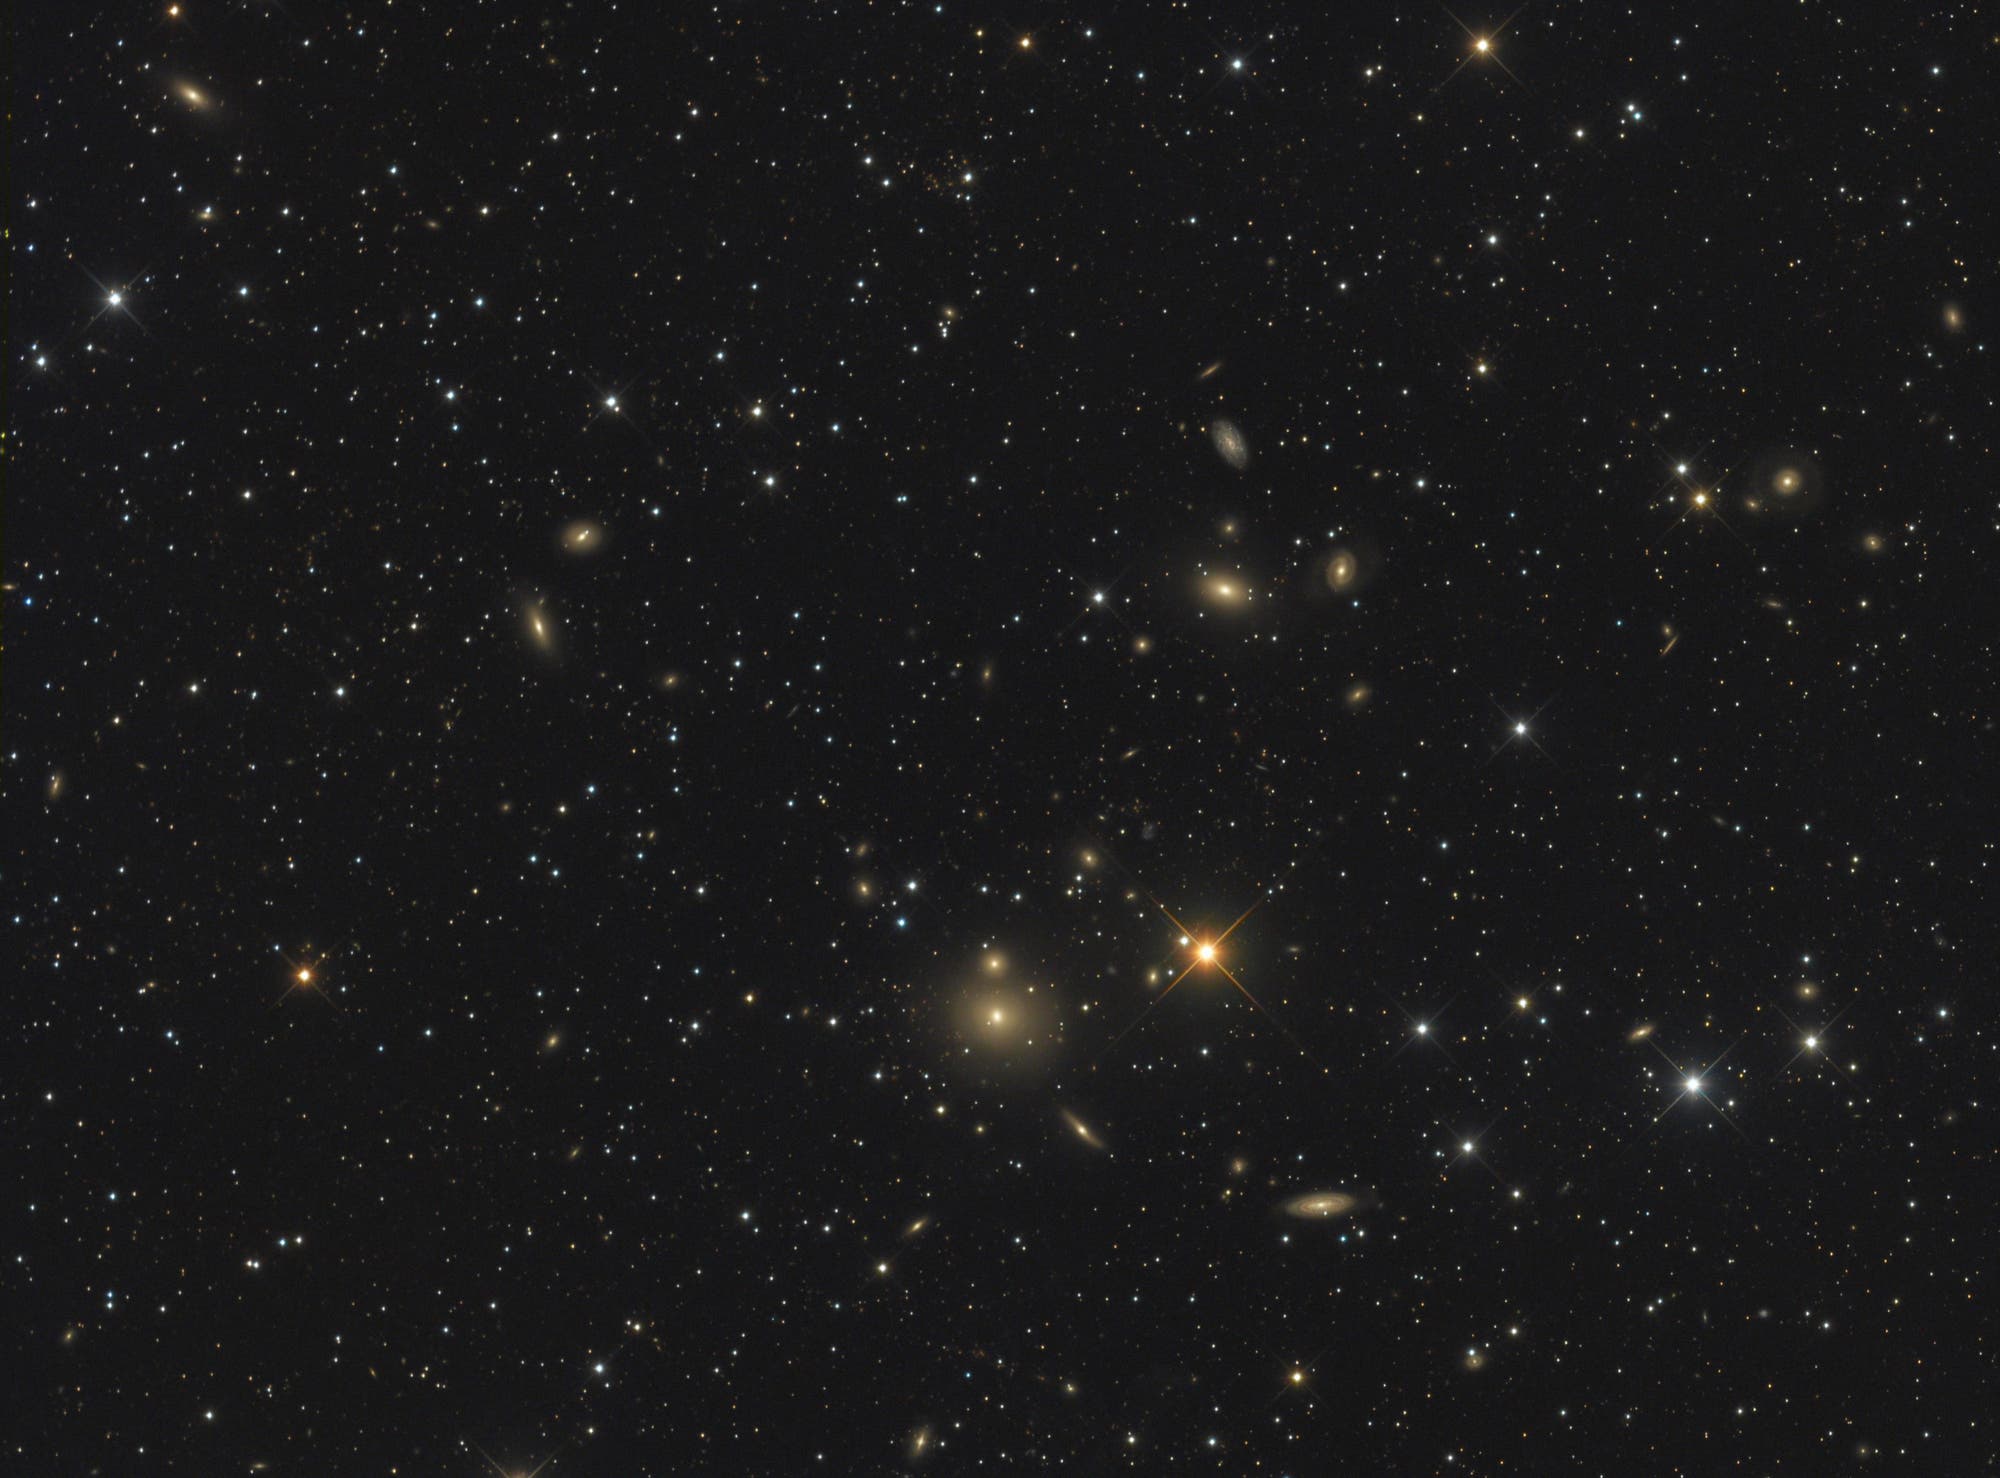 Arp 229 (NGC 507/508)